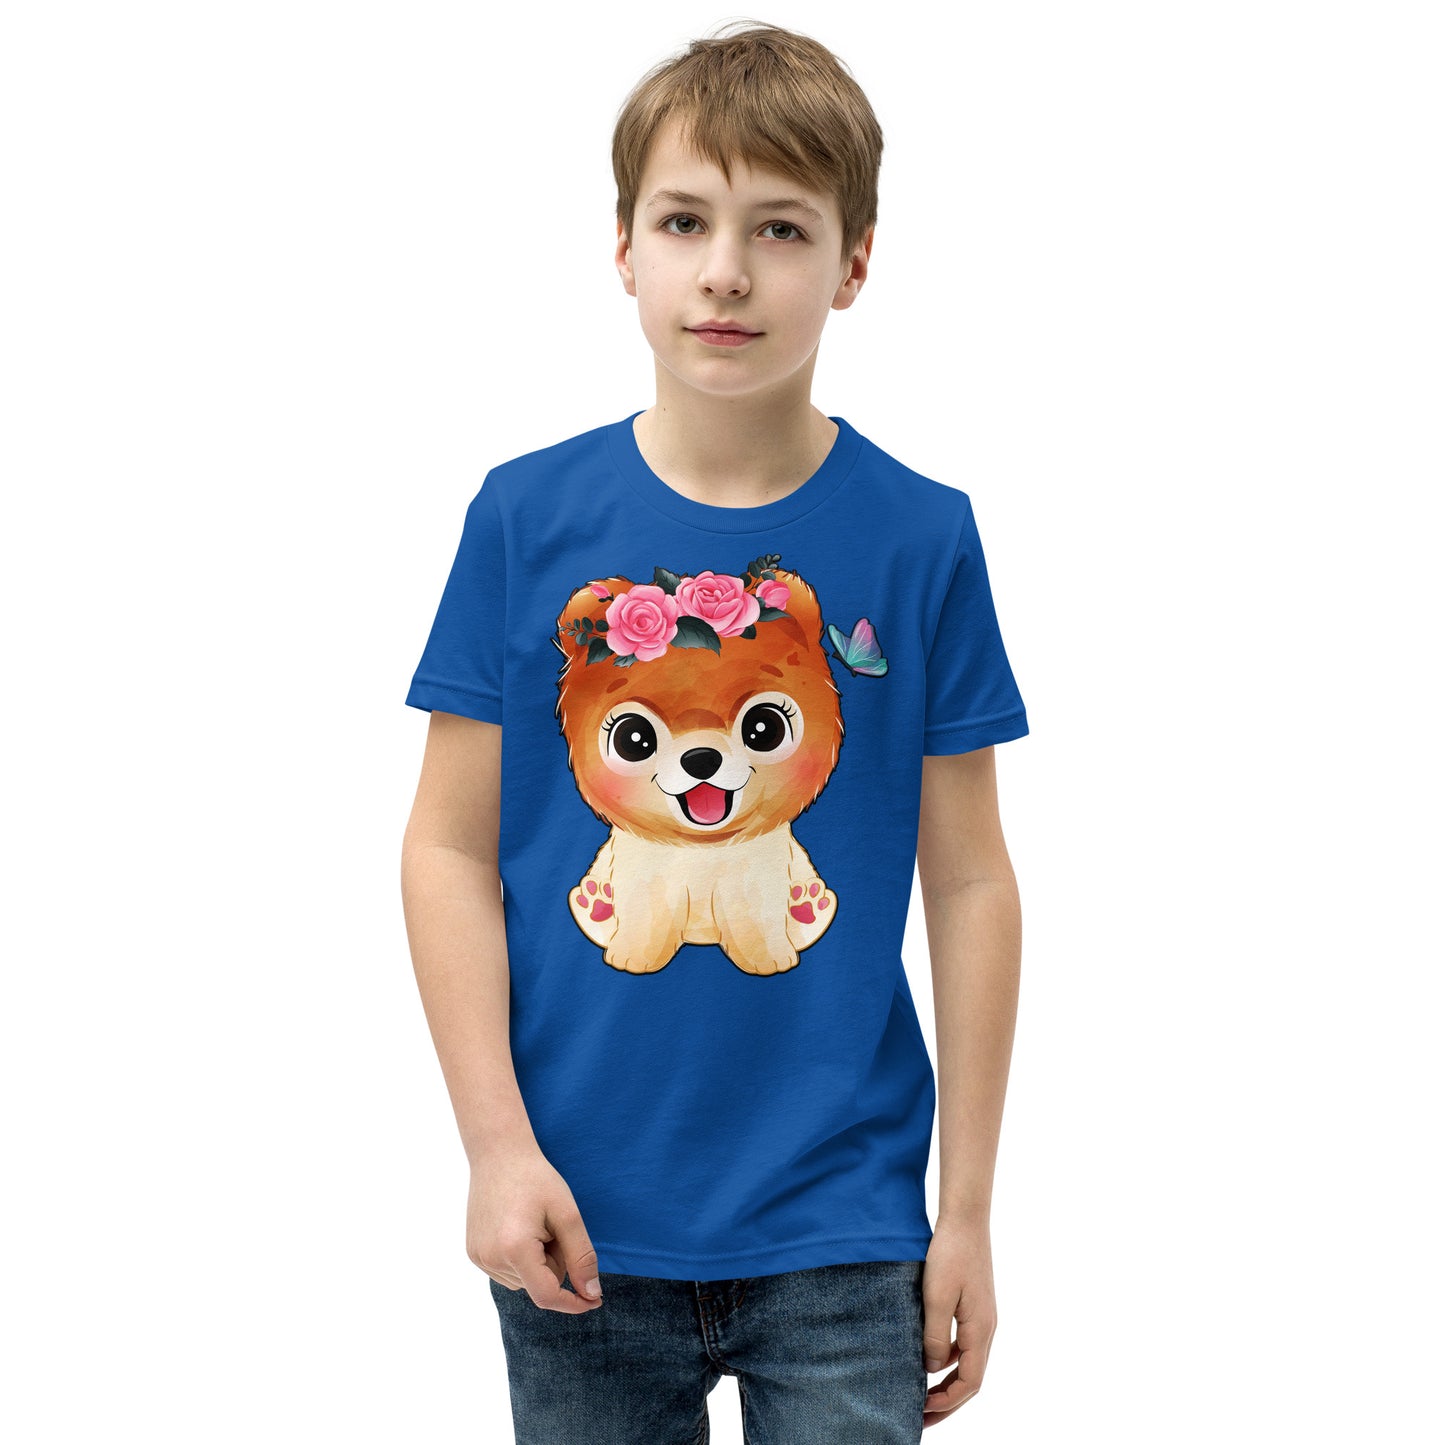 Cute Little Dog T-shirt, No. 0356